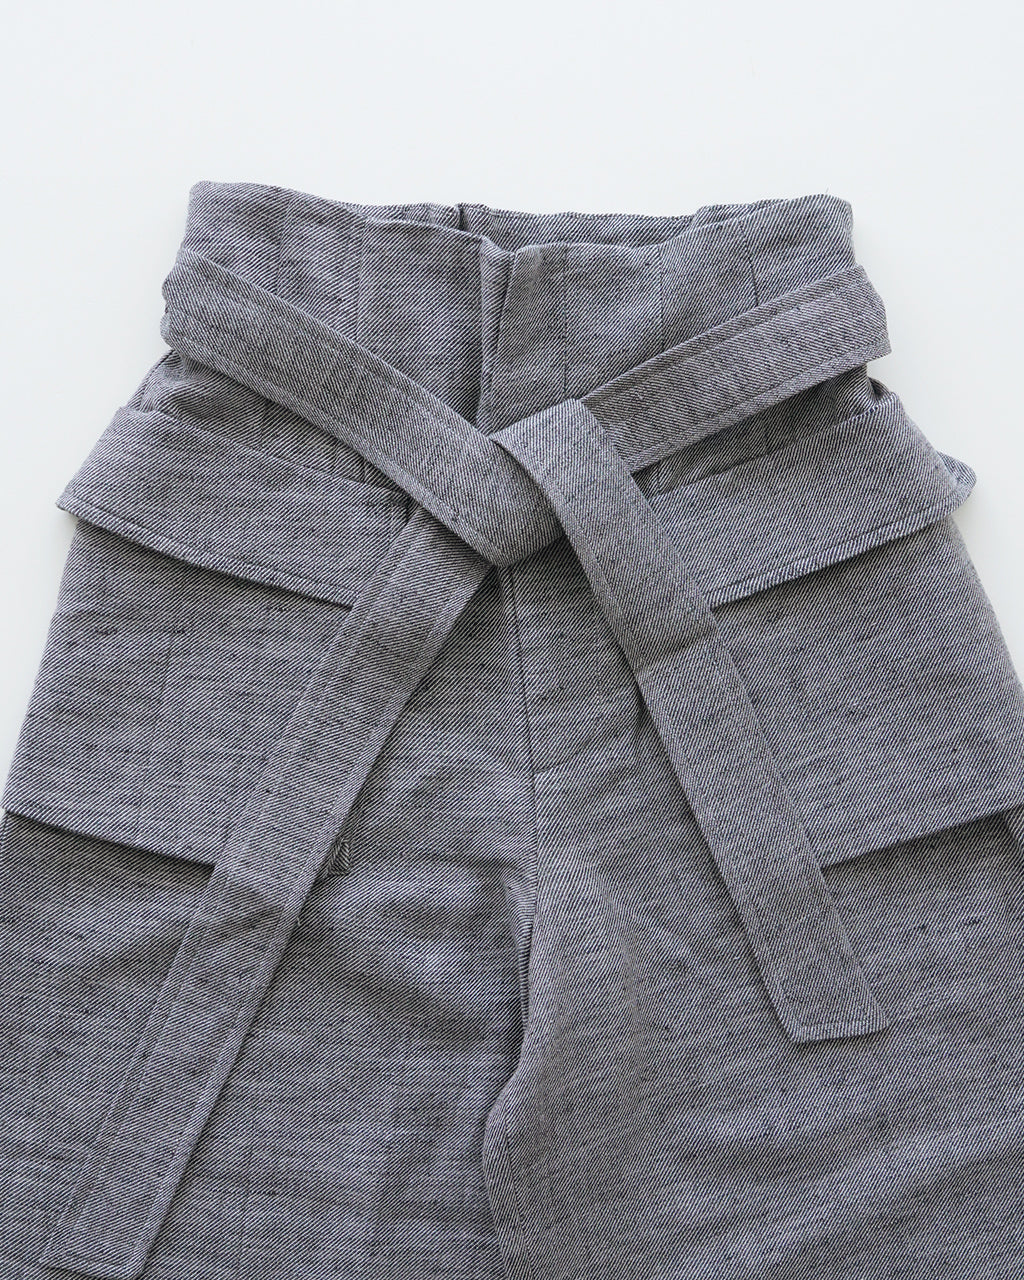 sana  サナ ワイド パンツ(リネン ツイル) wide pants (linen twill) ボトムス sabt-0707【送料無料】